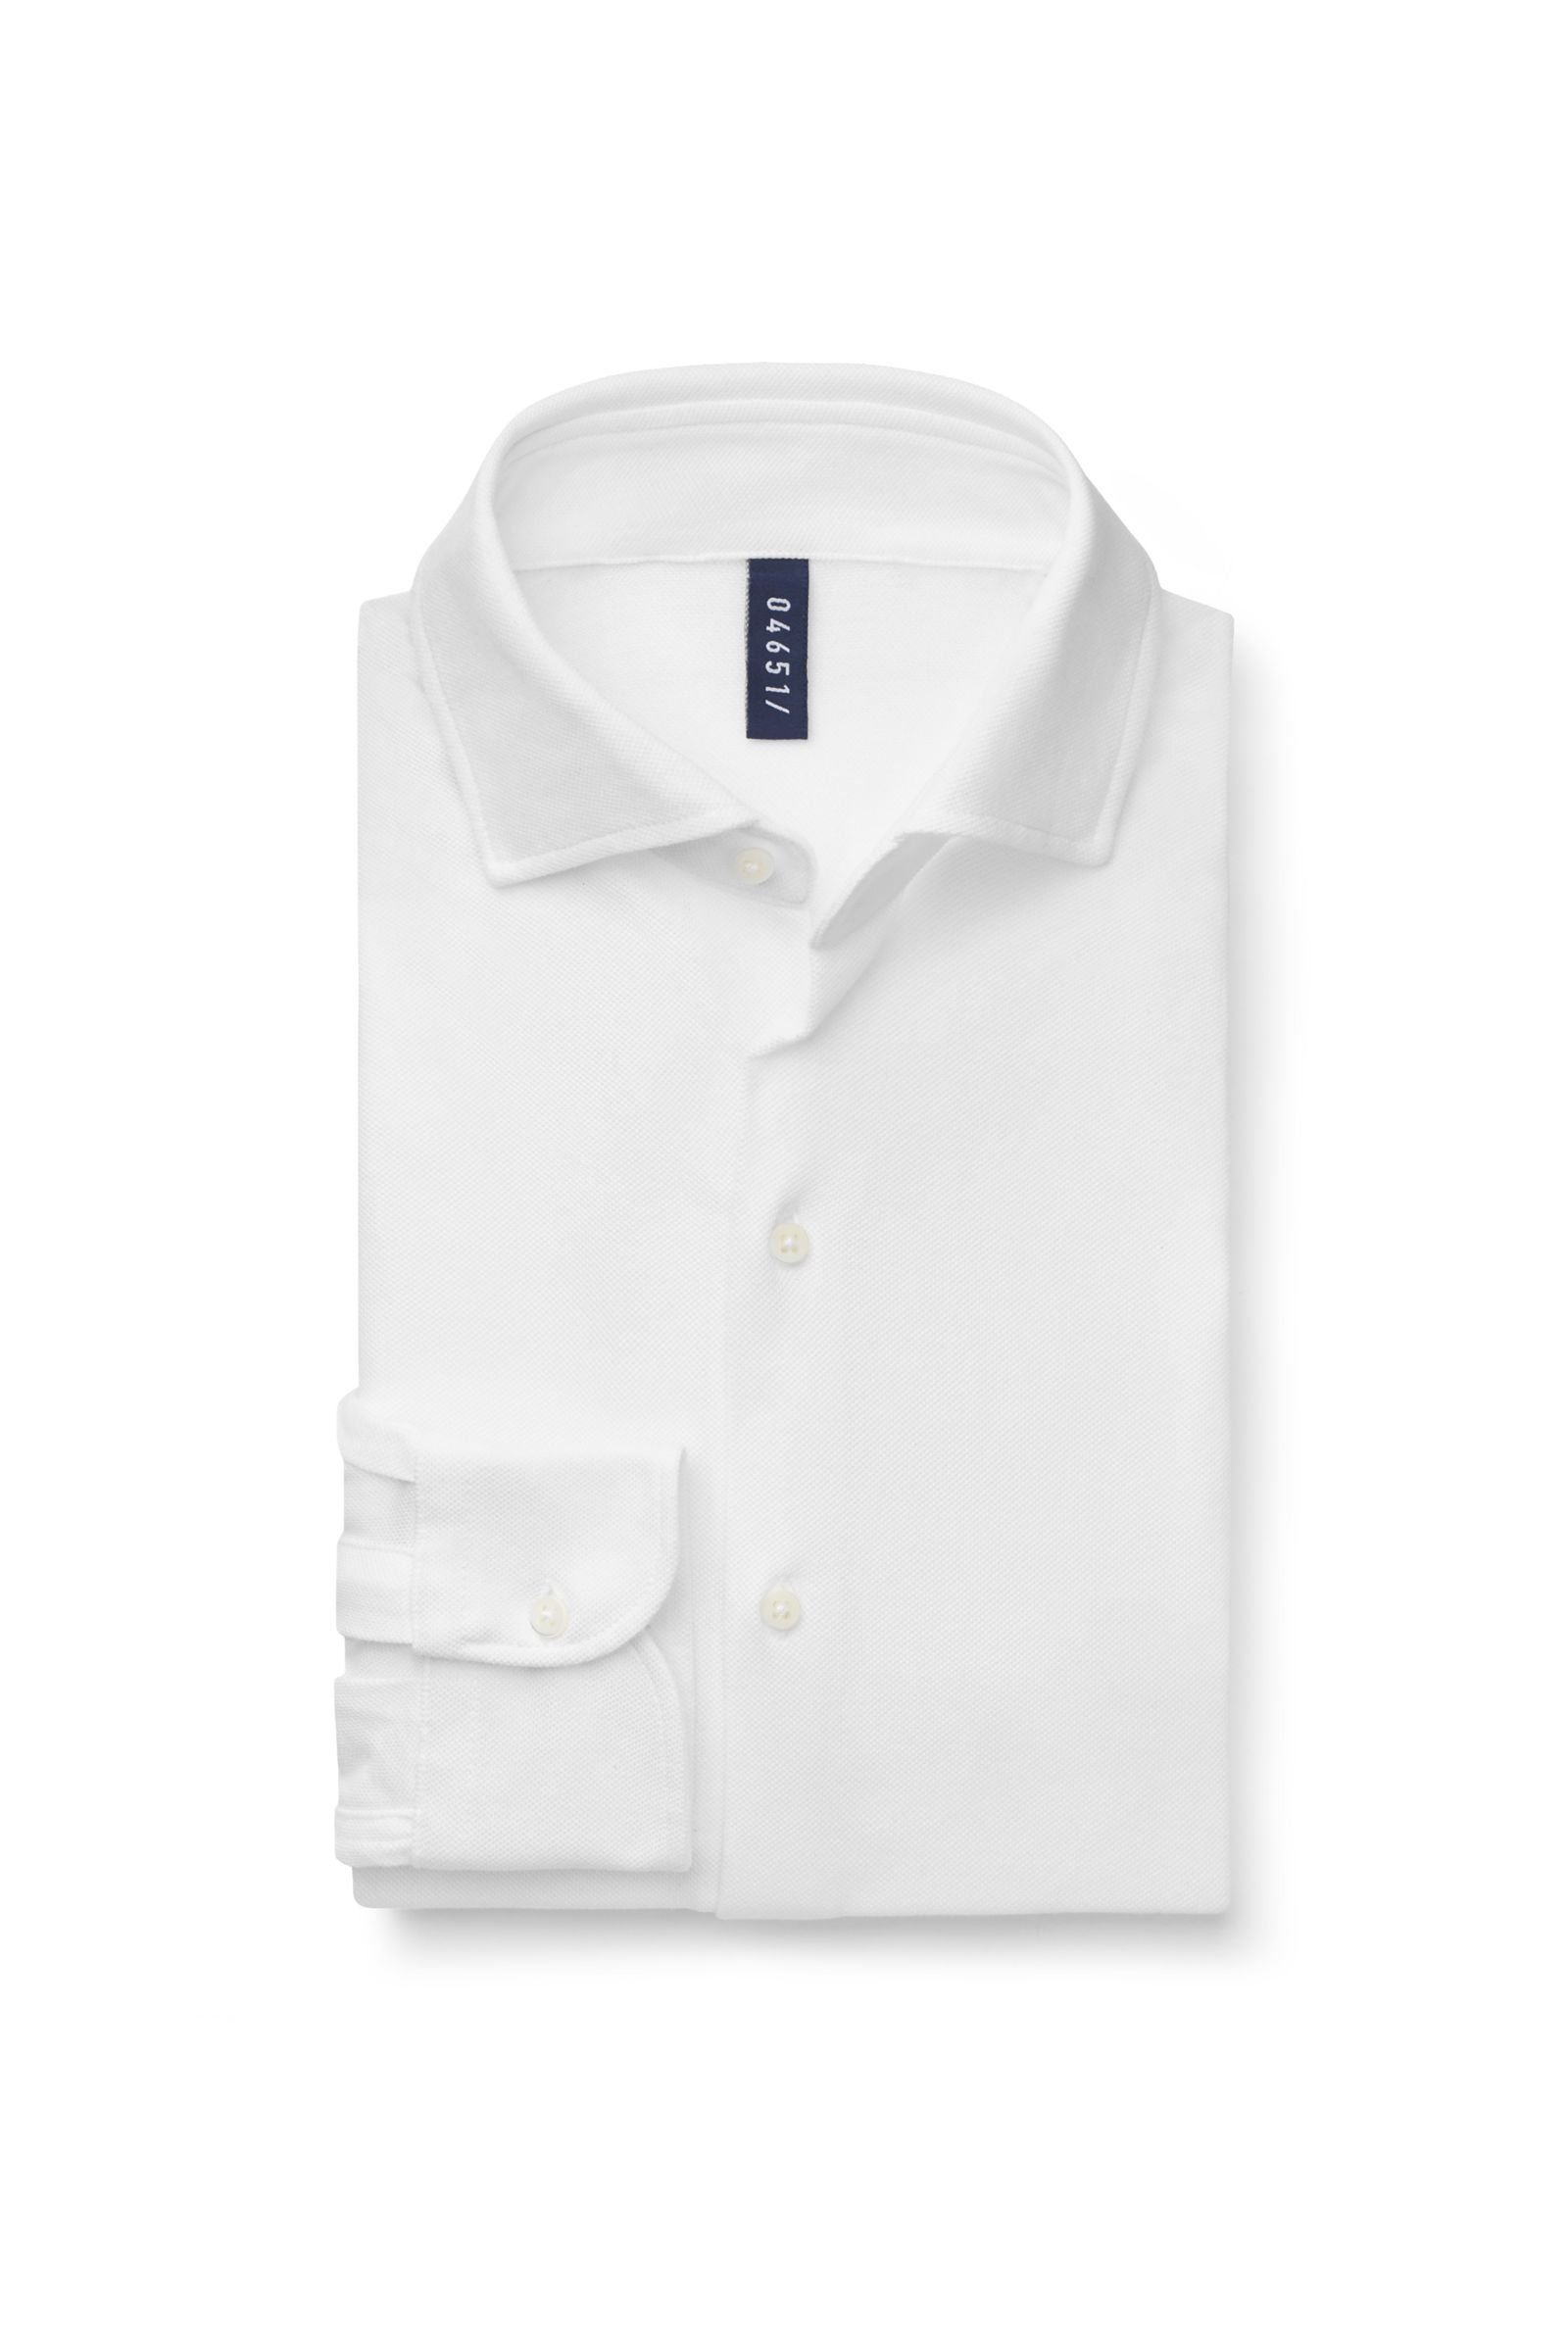 Piqué-Hemd schmaler Kragen weiß